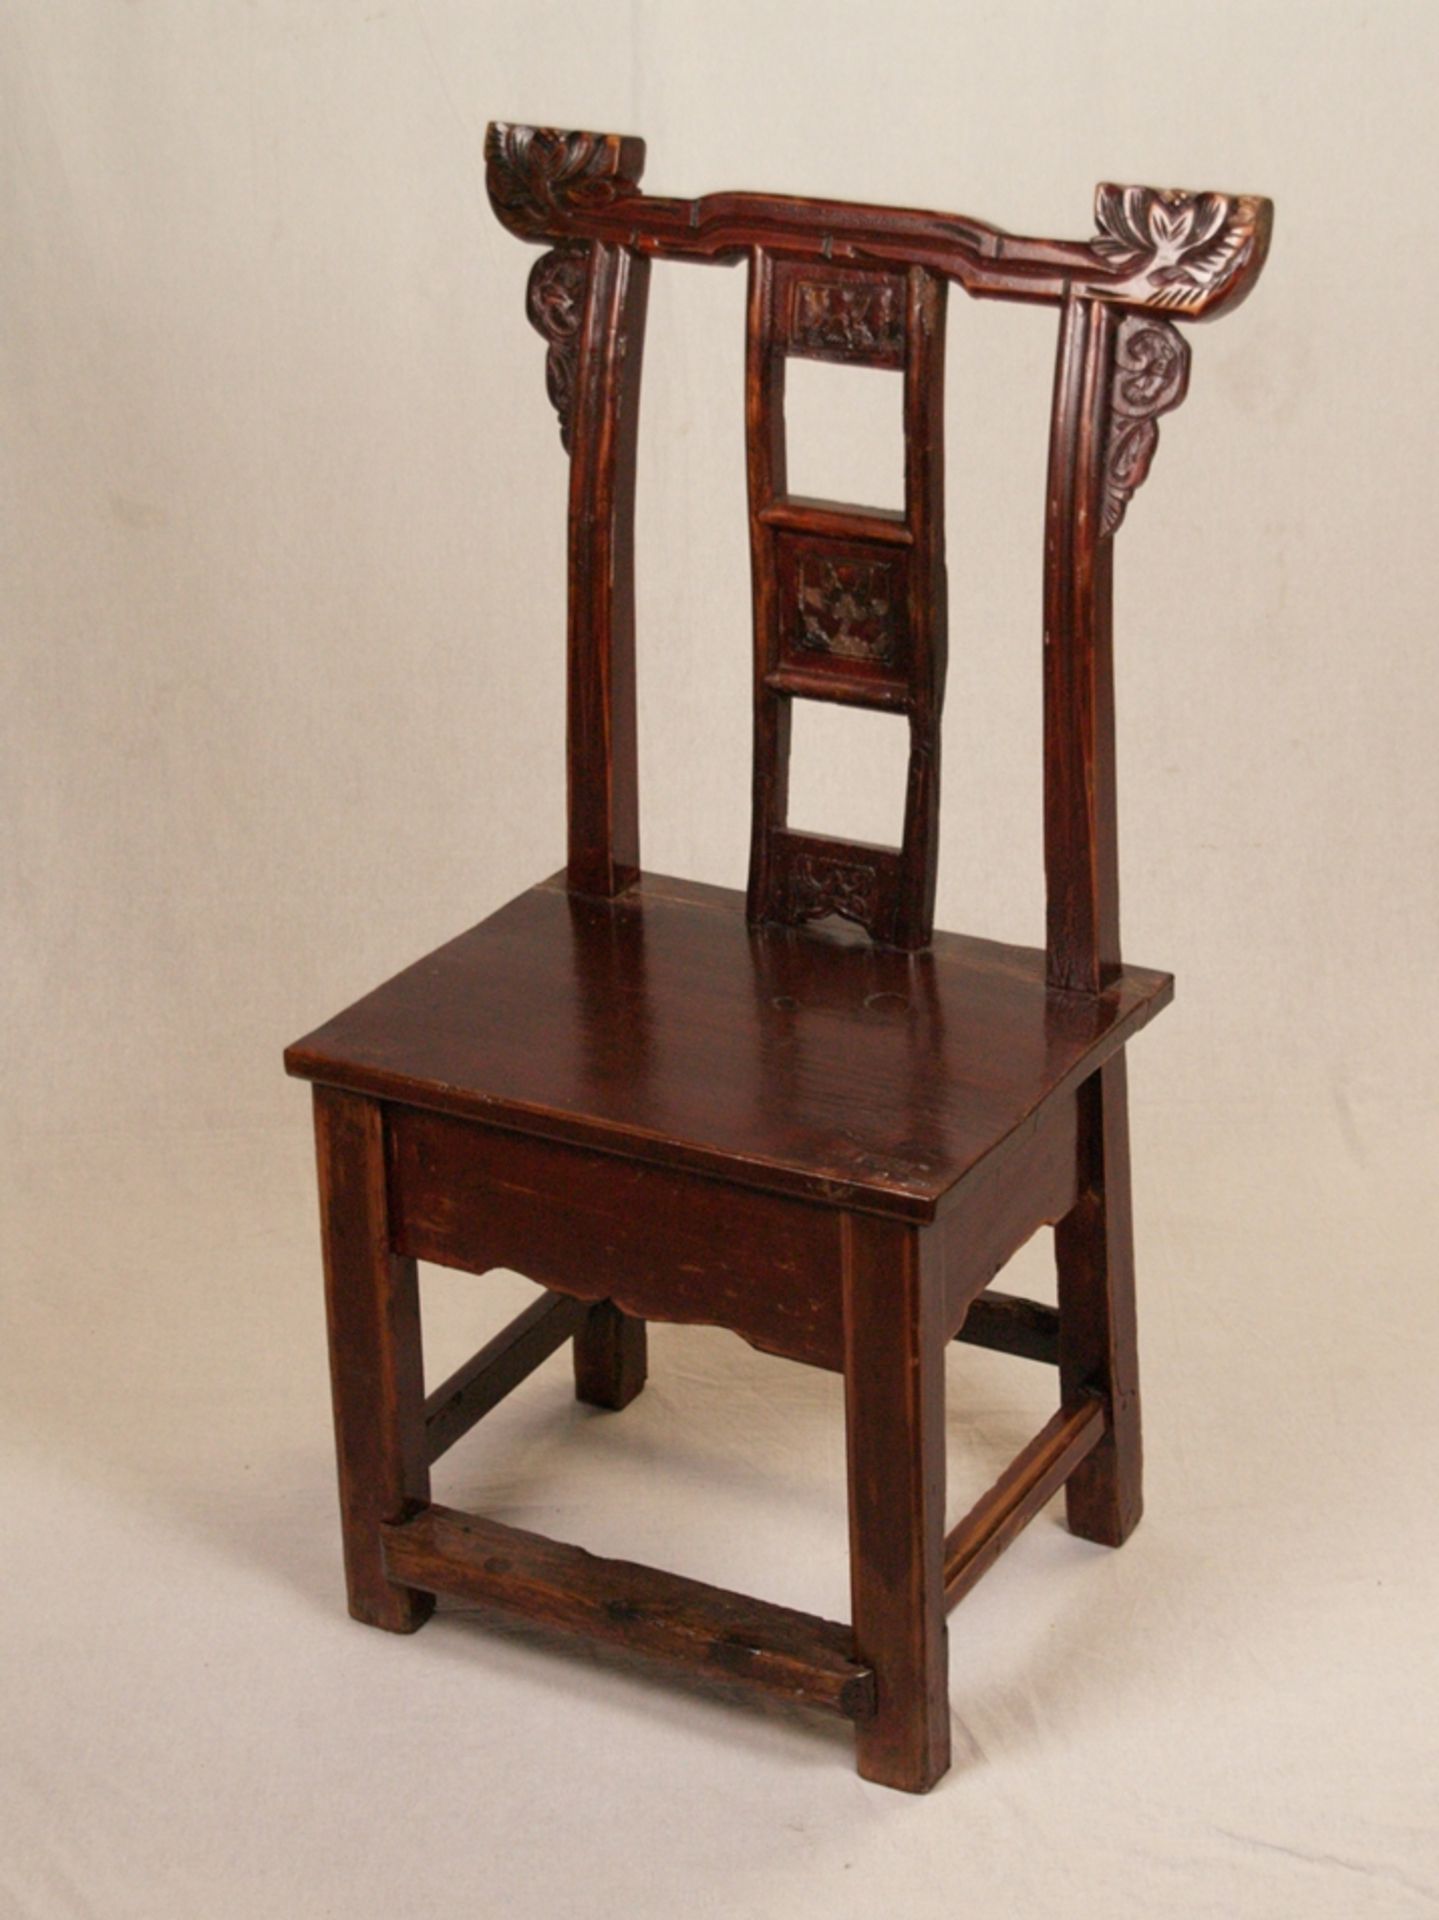 Stuhl - China, im Stil der Hutstühle, Mittelstreifen der Rückenlehne mit drei kleinen eingesetzten 